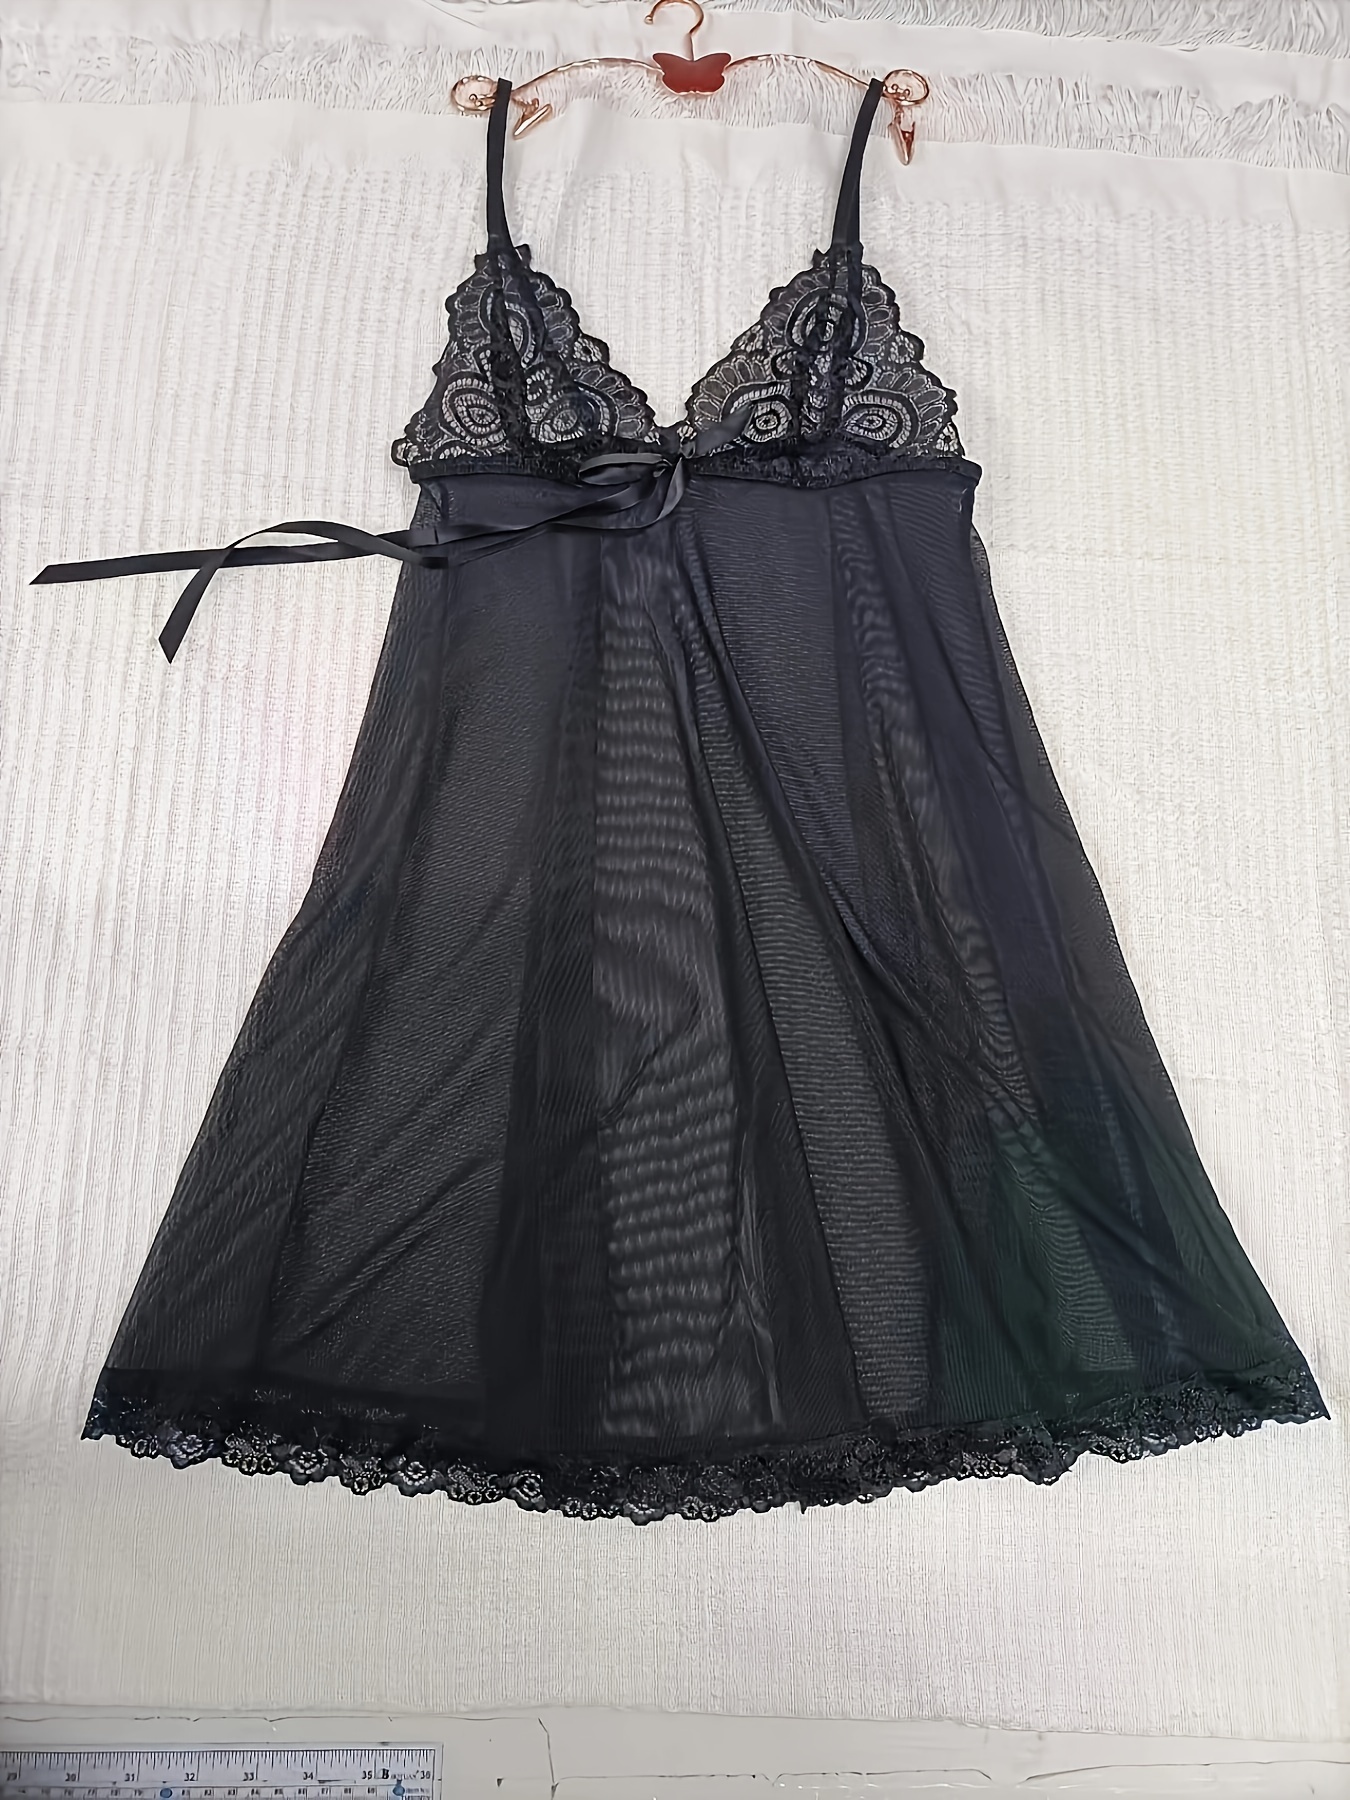 Contrast Lace Semi Sheer Lingerie Set, V Neck Split Hem Slip Dress & Thong,  Women's Sexy Lingerie & Underwear